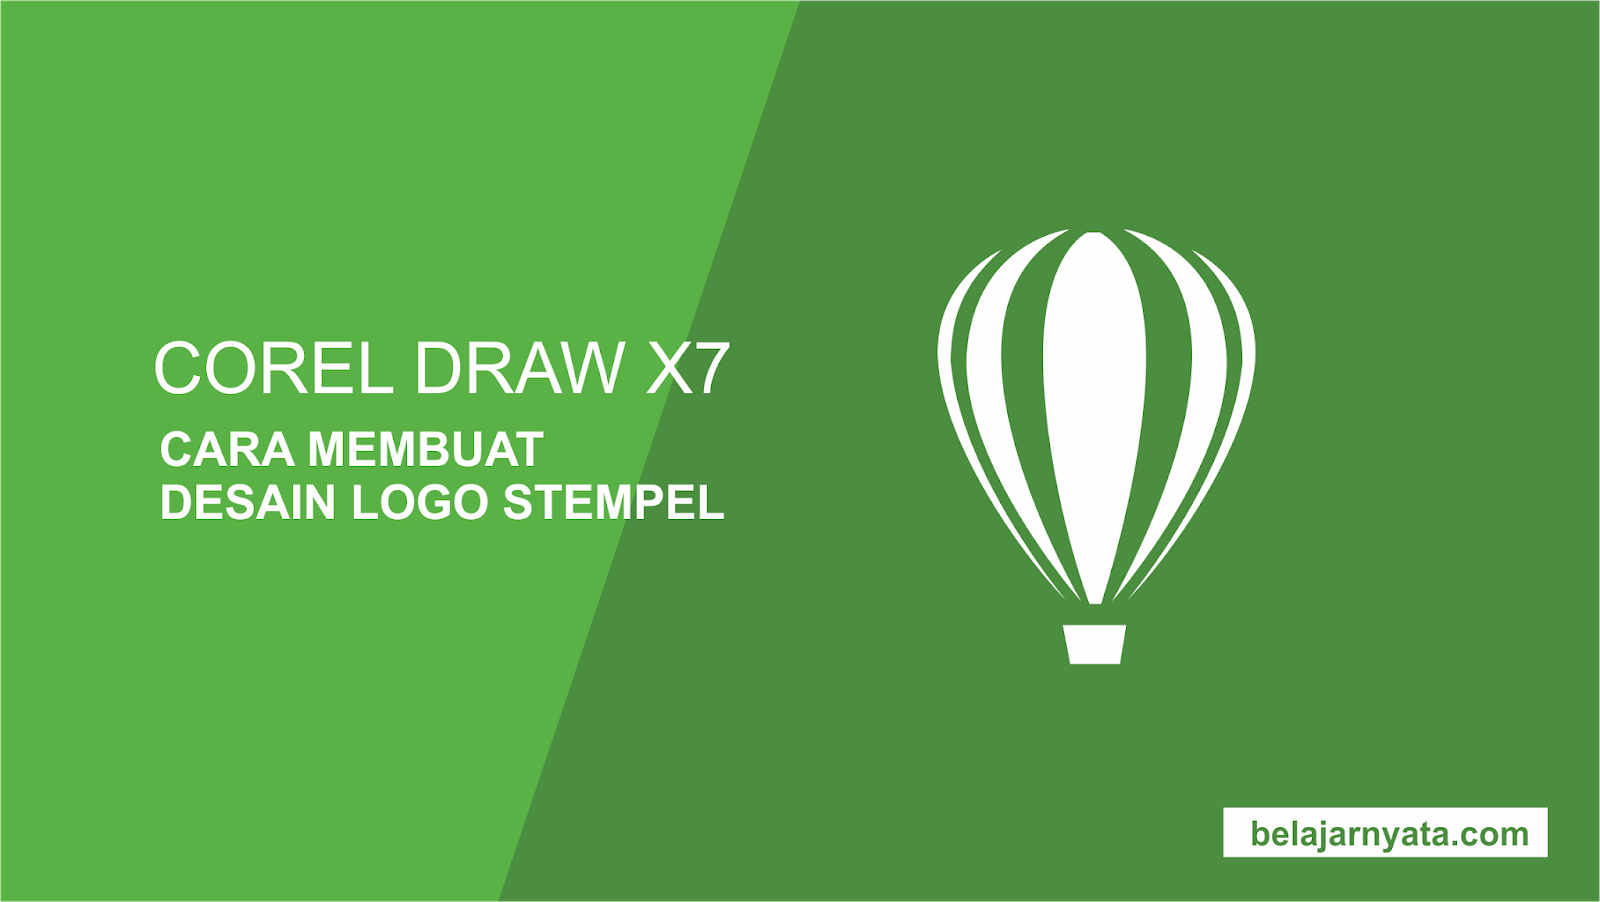  Cara  Membuat  Desain  Logo Stempel  Menggunakan CorelDraw  X7 